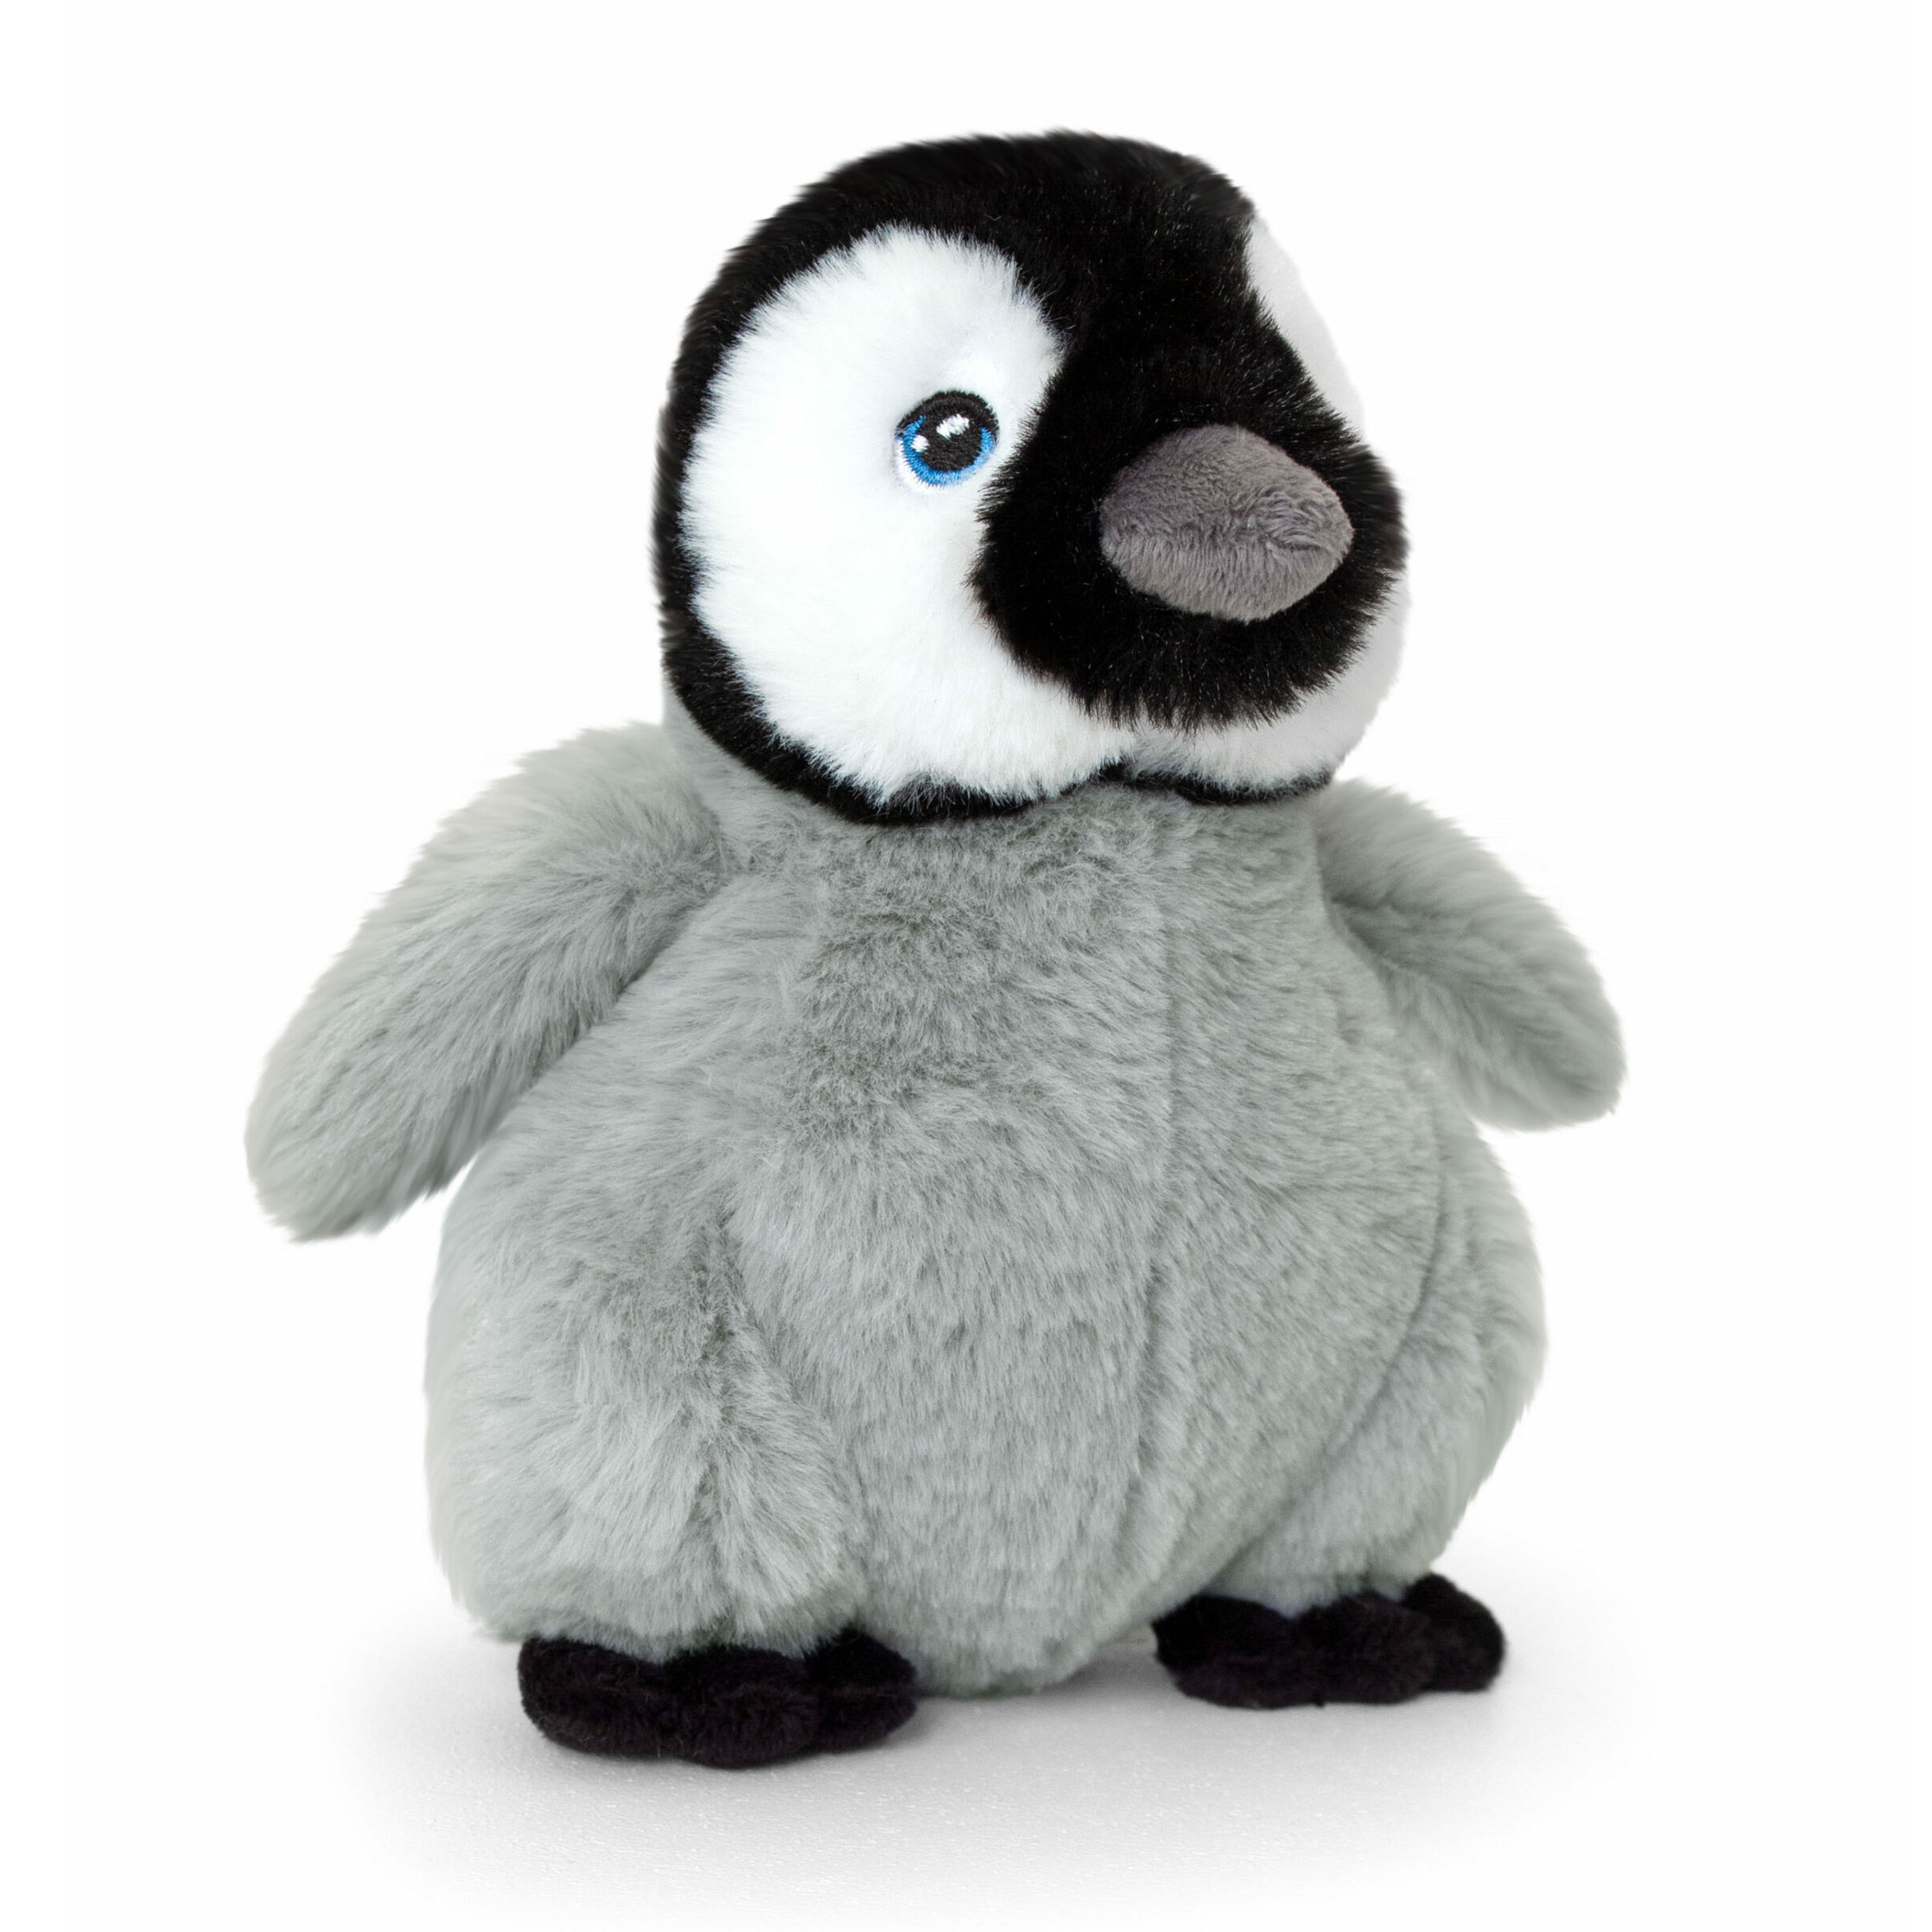 Keel Toys pluche pinguin kuiken knuffeldier grijs-zwart staand 25 cm